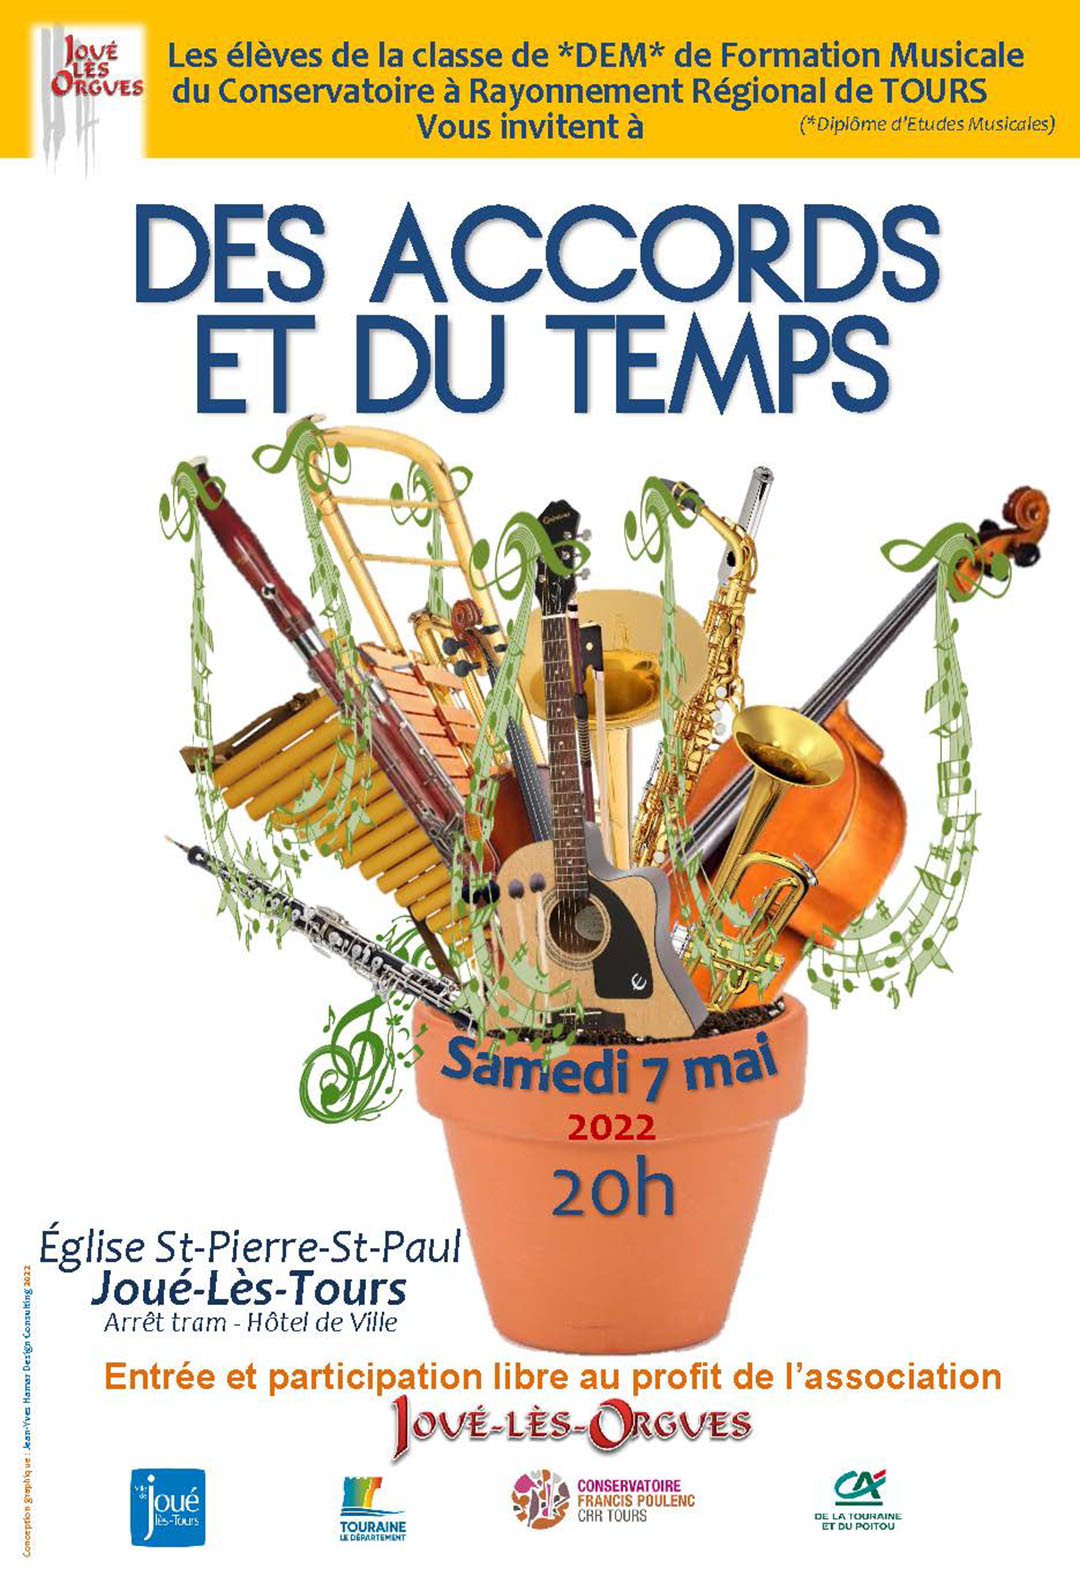 CONCERT DES ACCORDS ET DU TEMPS - 7 MAI 2022 - JOUE LES ORGUES  ©joué lès orgues